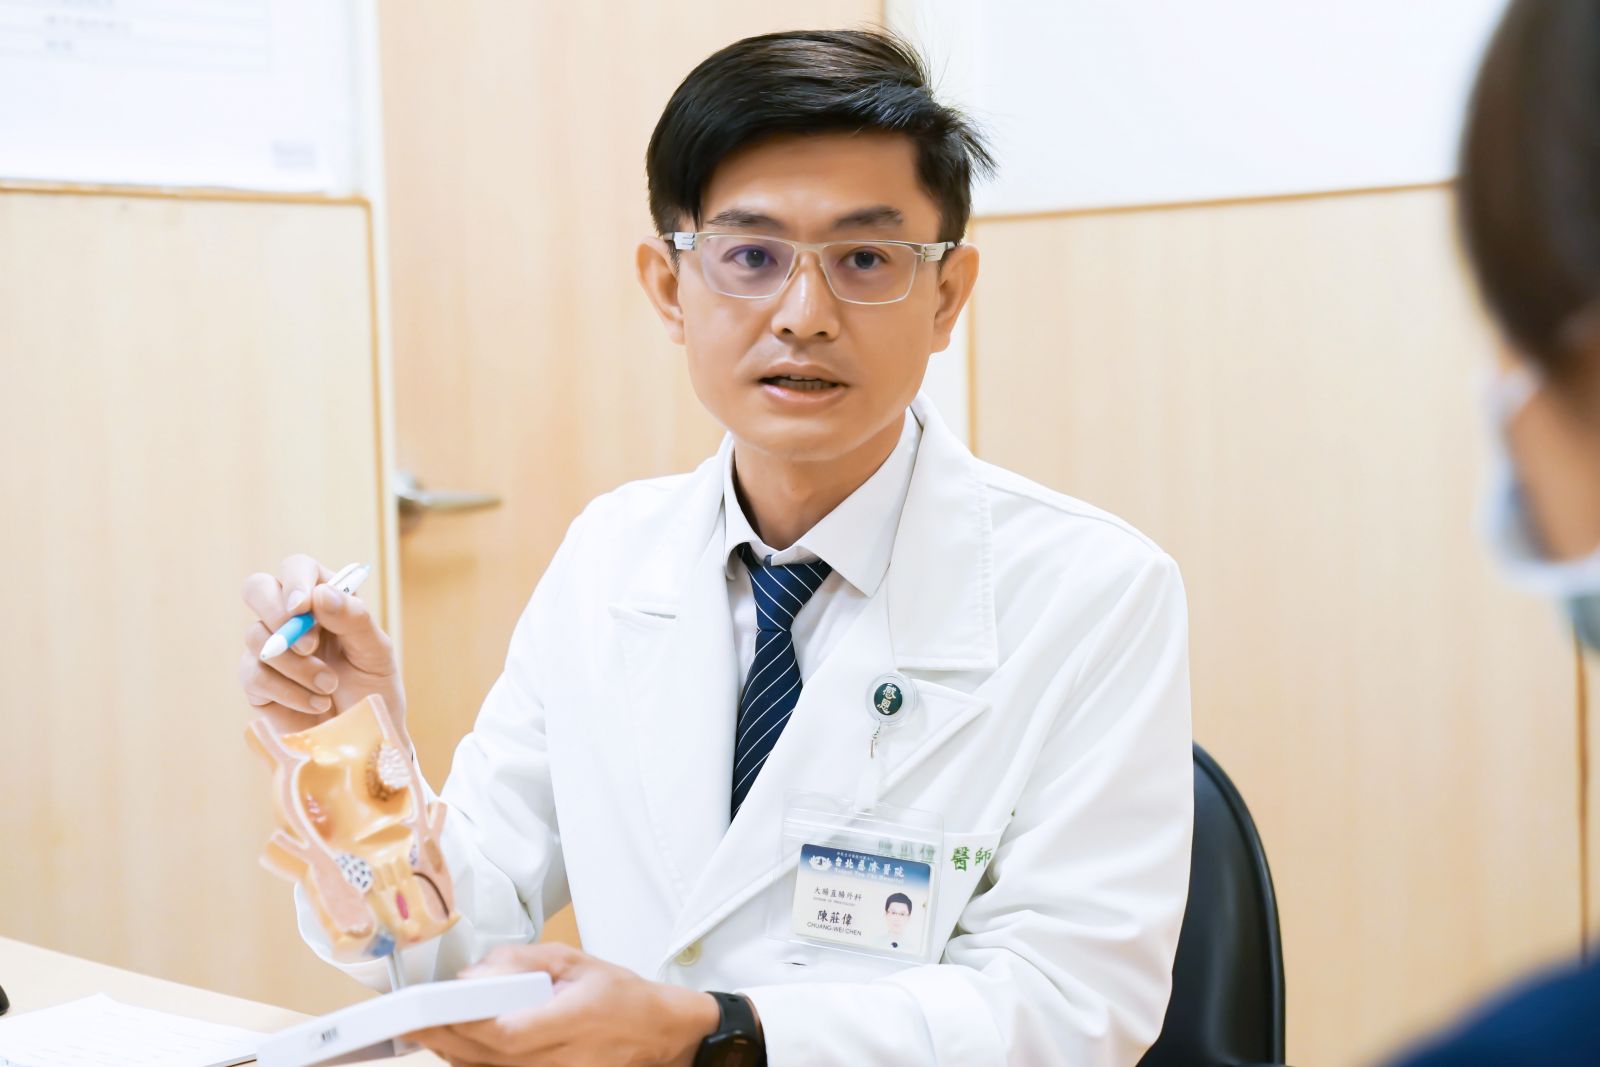 大腸直腸外科陳莊偉醫師向病患說明病情。圖/台北慈濟醫院提供